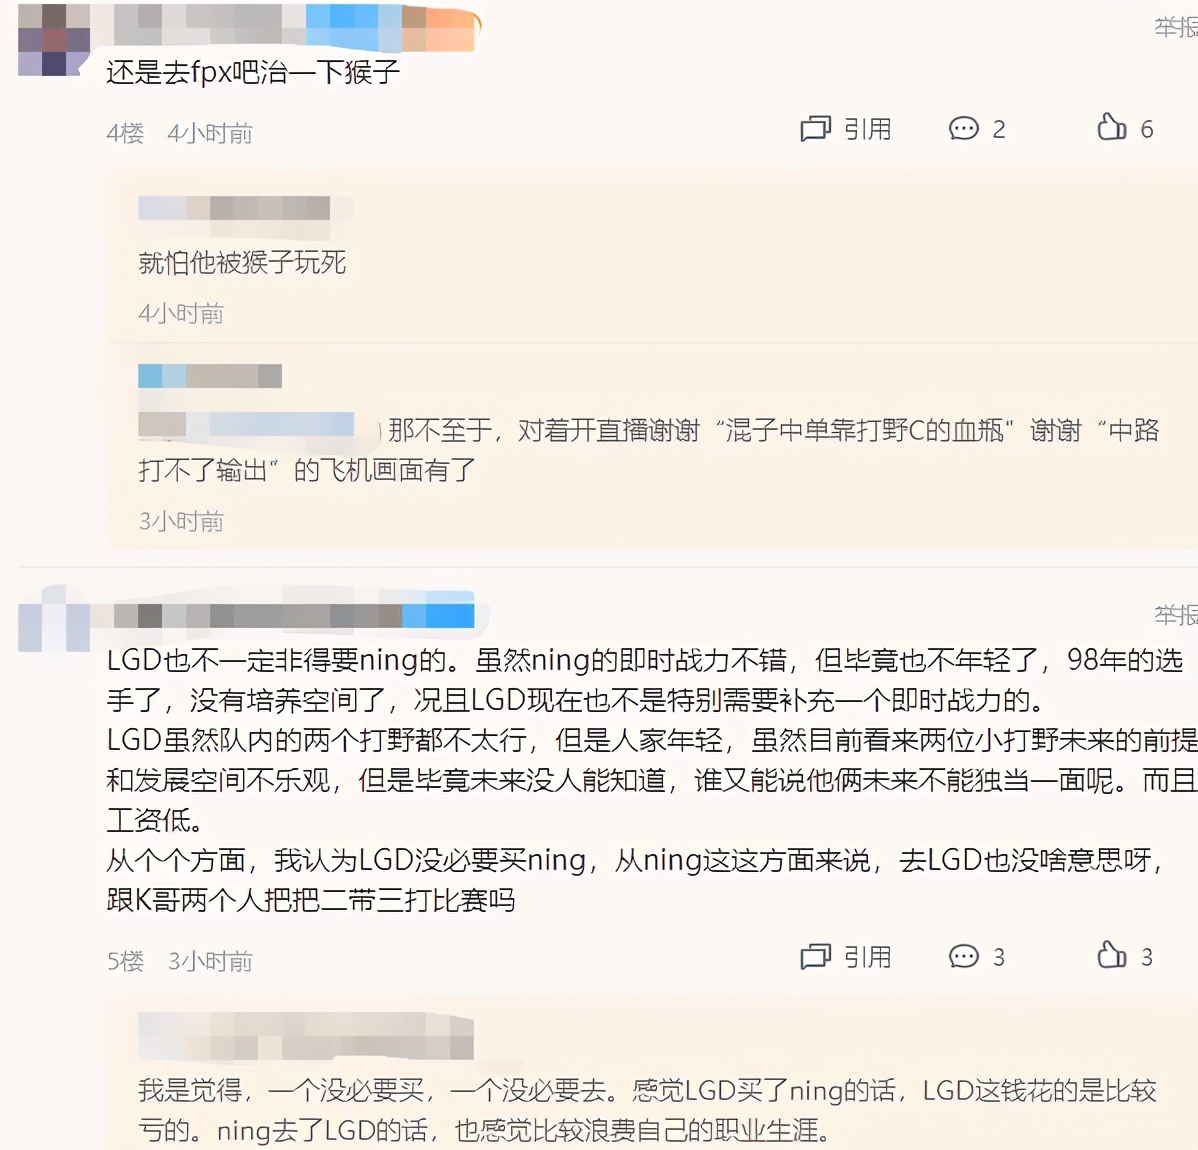 郝劭文女儿遭霸凌校方否认 官方批学校有“三大问题”要求道歉 | 联合早报